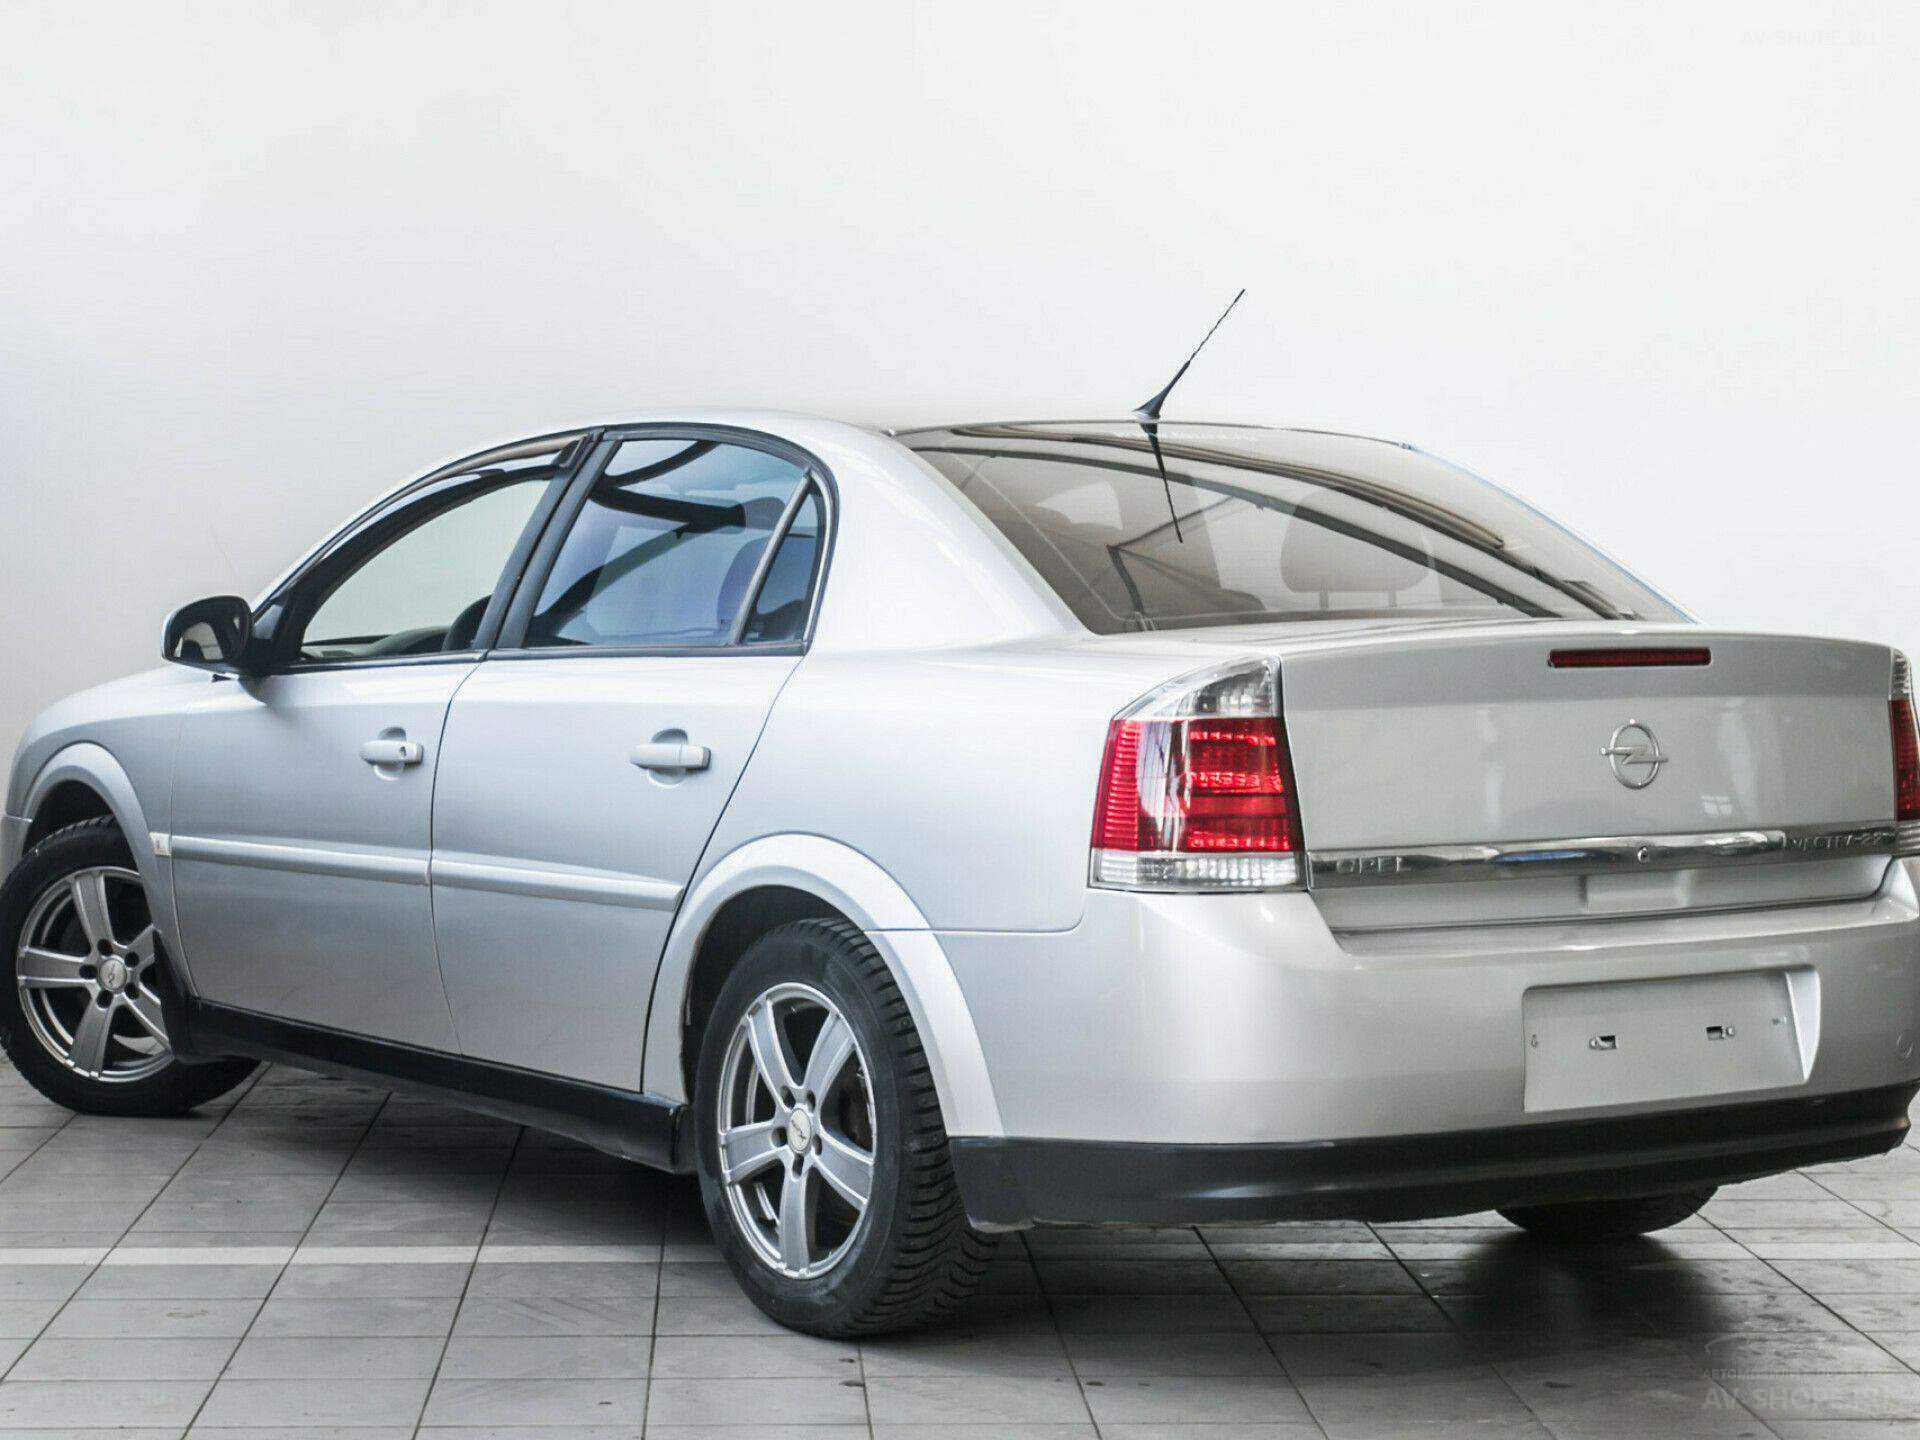 Opel Vectra c 2.2. Опель Вектра с 2.2 бензин. Opel Vectra 2.0 1997. Opel Vectra c 2.2 Wheel. Опель вектра 2.2 дизель купить